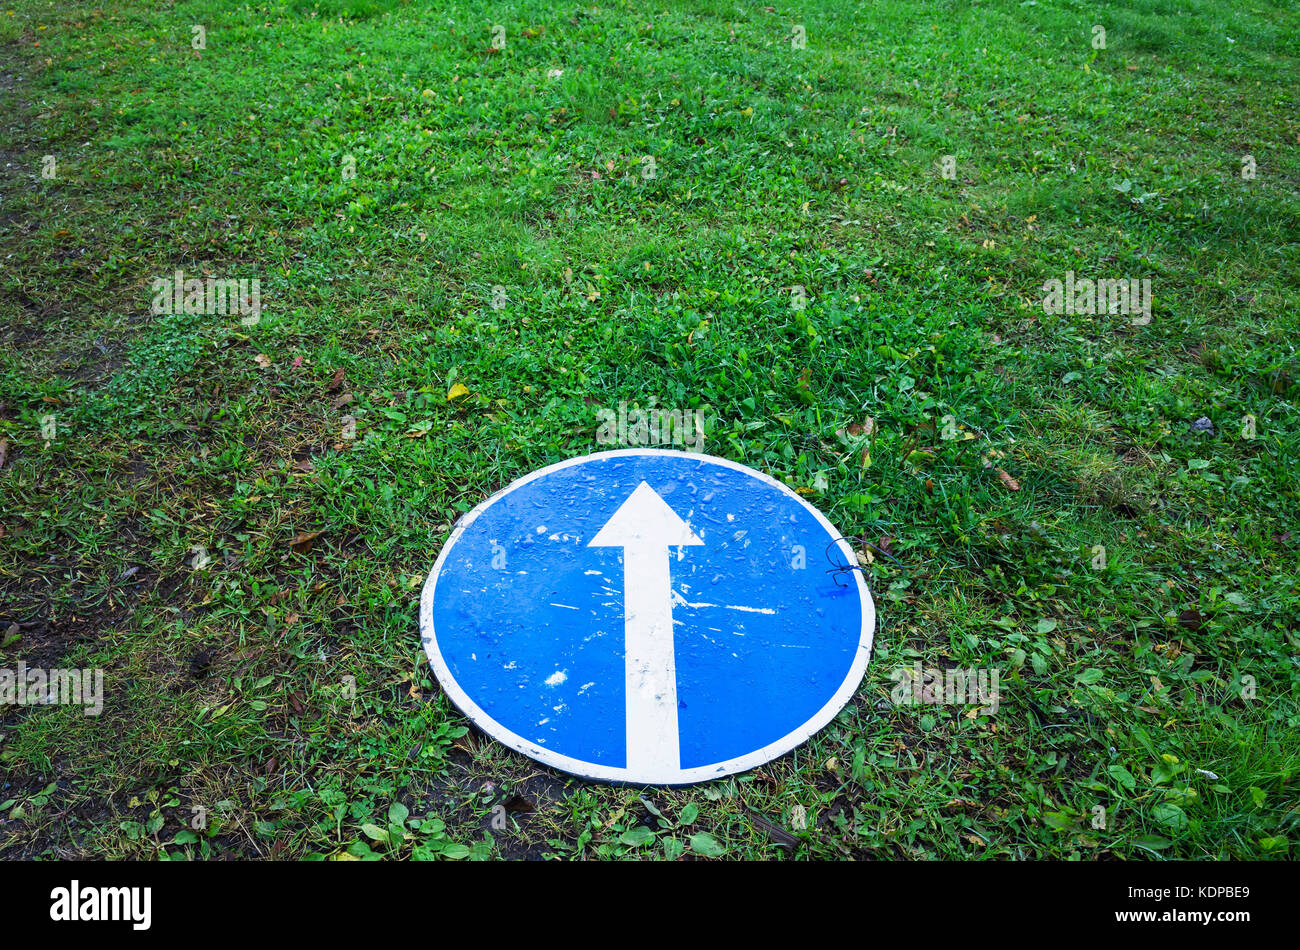 De l'avant uniquement, round road sign bleu avec une flèche blanche jette sur l'herbe verte Banque D'Images